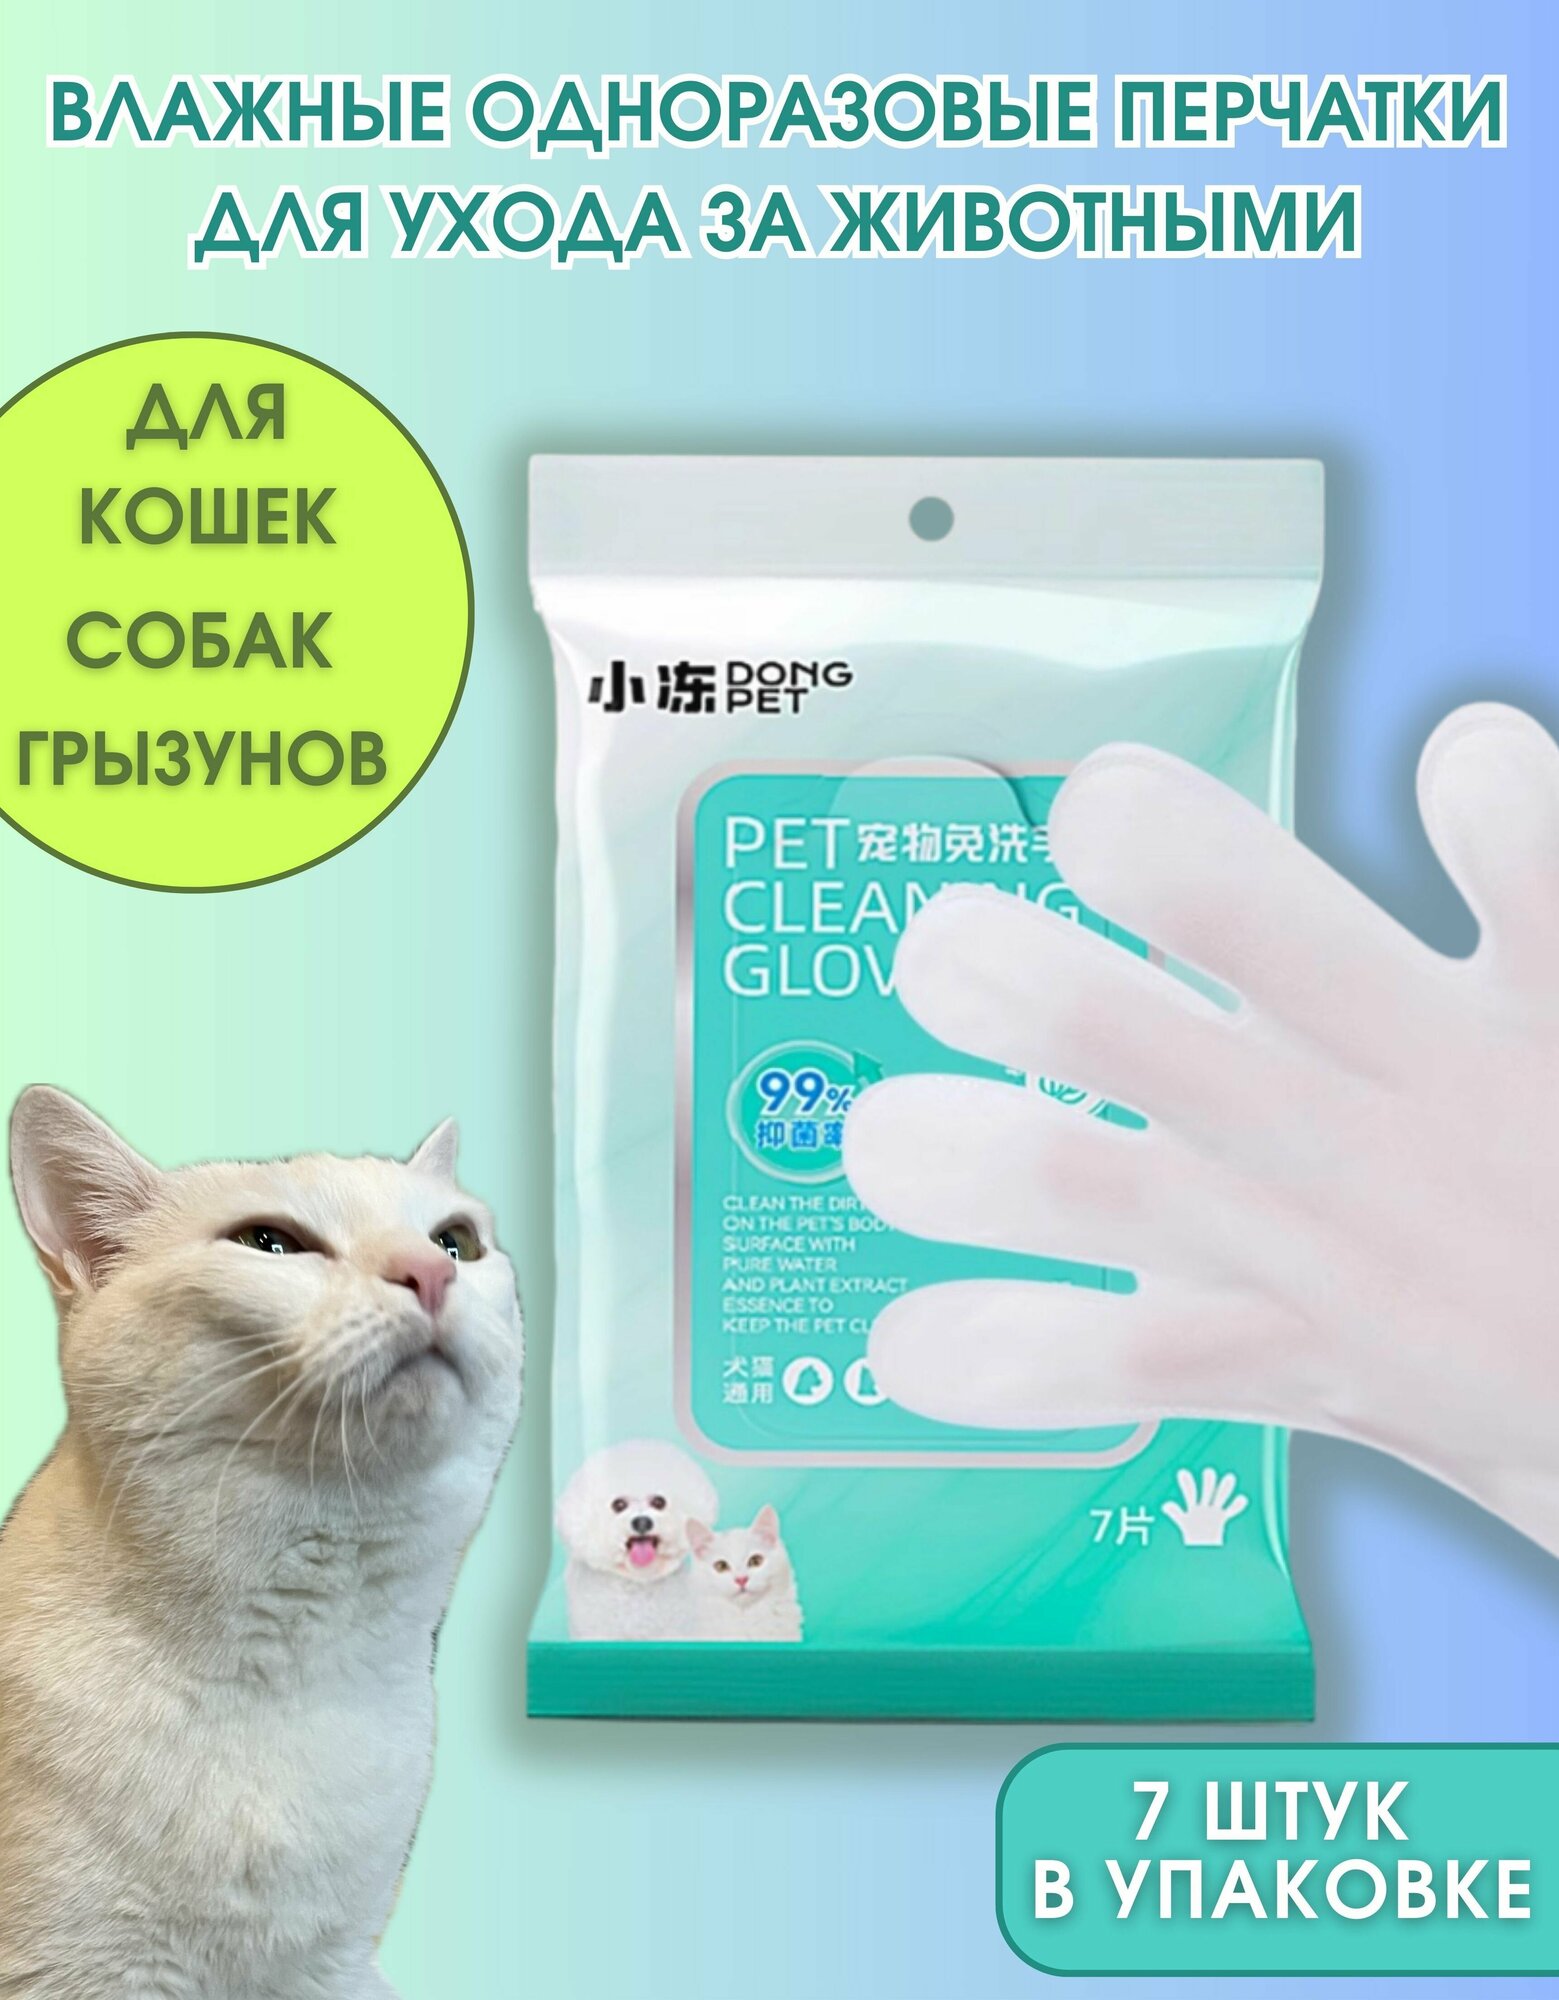 Влажные одноразовые перчатки - салфетки для мытья и ухода за животными Dong Pet, 7 шт.